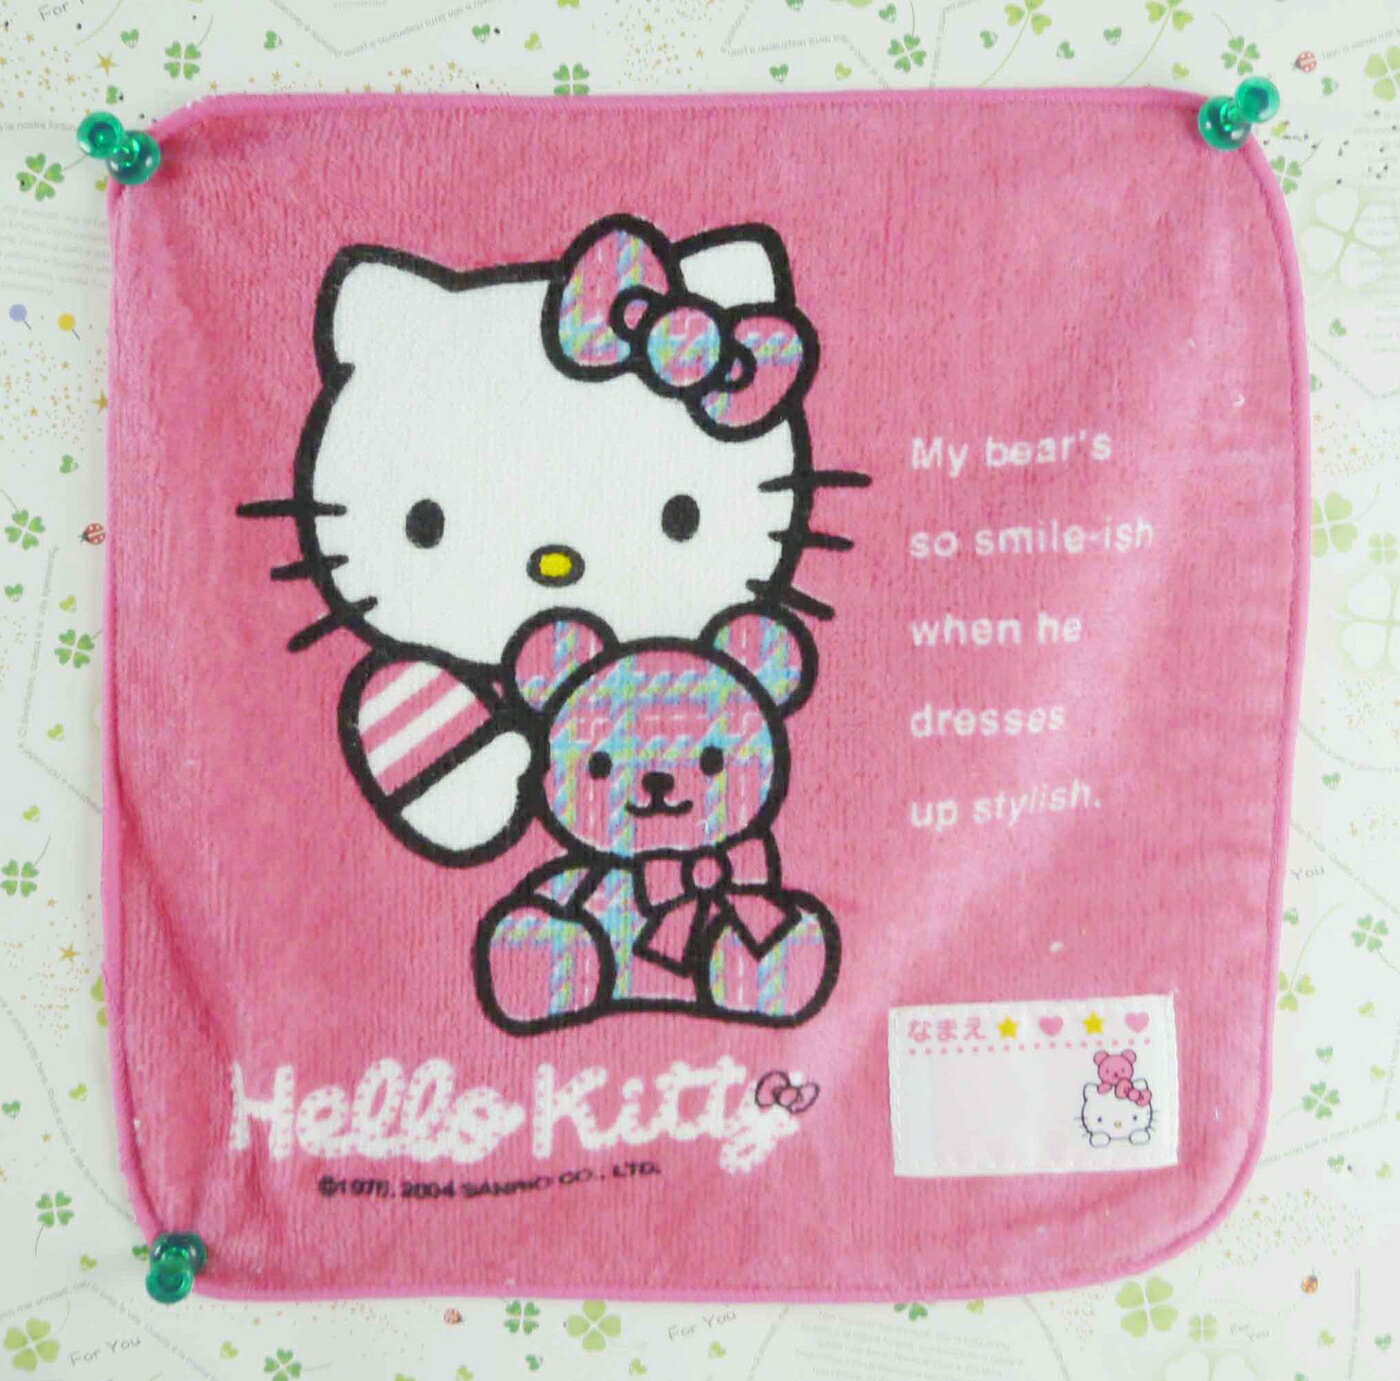 【震撼精品百貨】Hello Kitty 凱蒂貓 方巾/毛巾-粉熊條線 震撼日式精品百貨